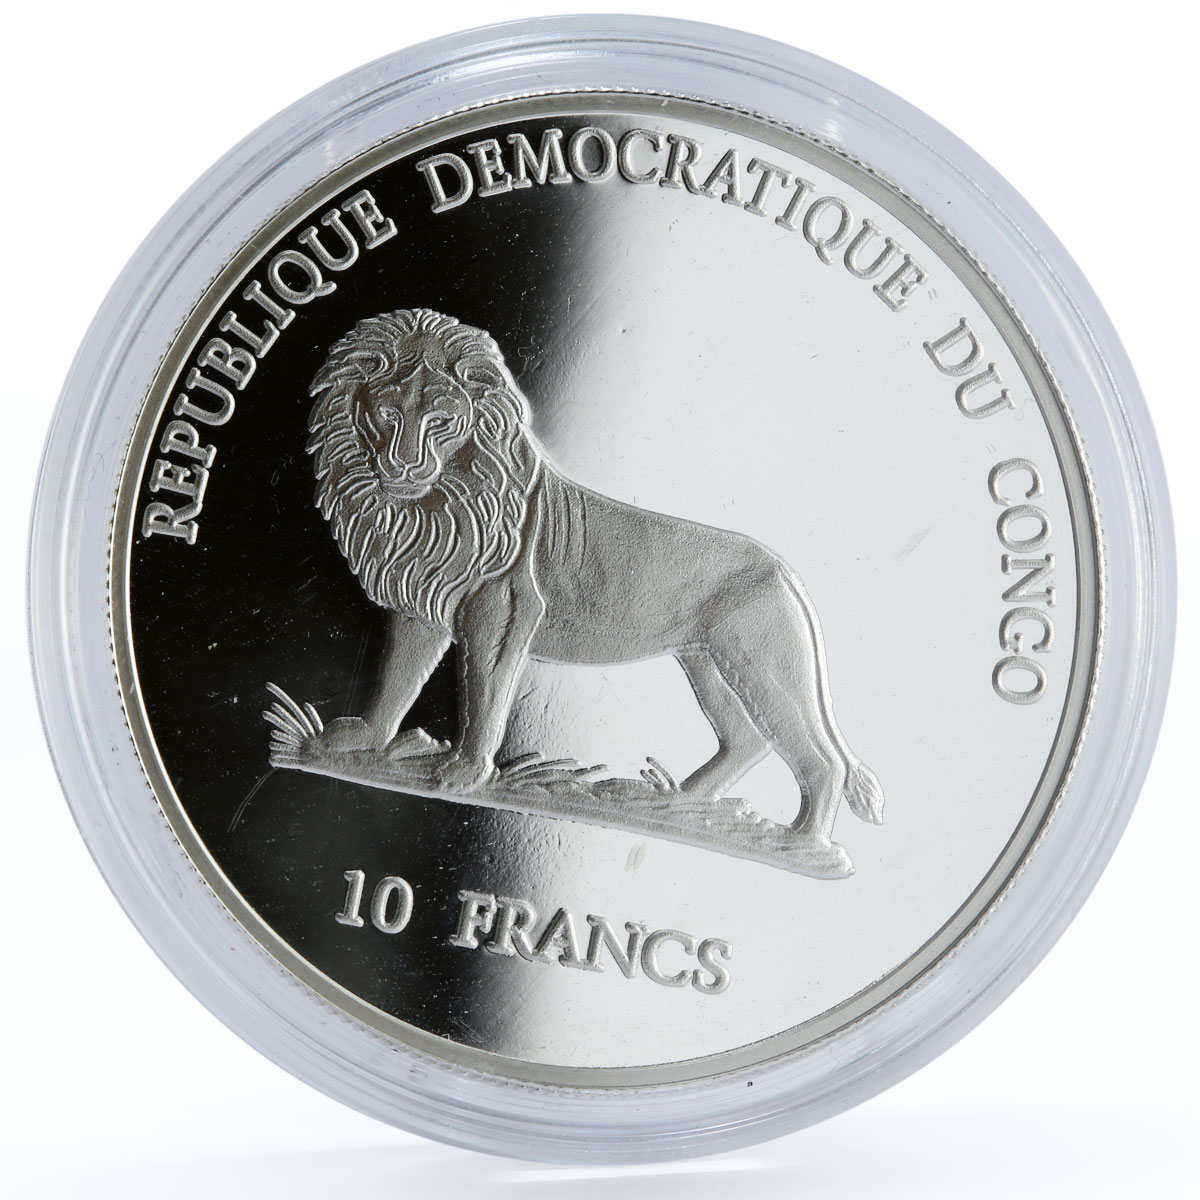 Congo 10 francs Seafaring Portuguese Ship Dio Cao Clipper proof silver coin 2000